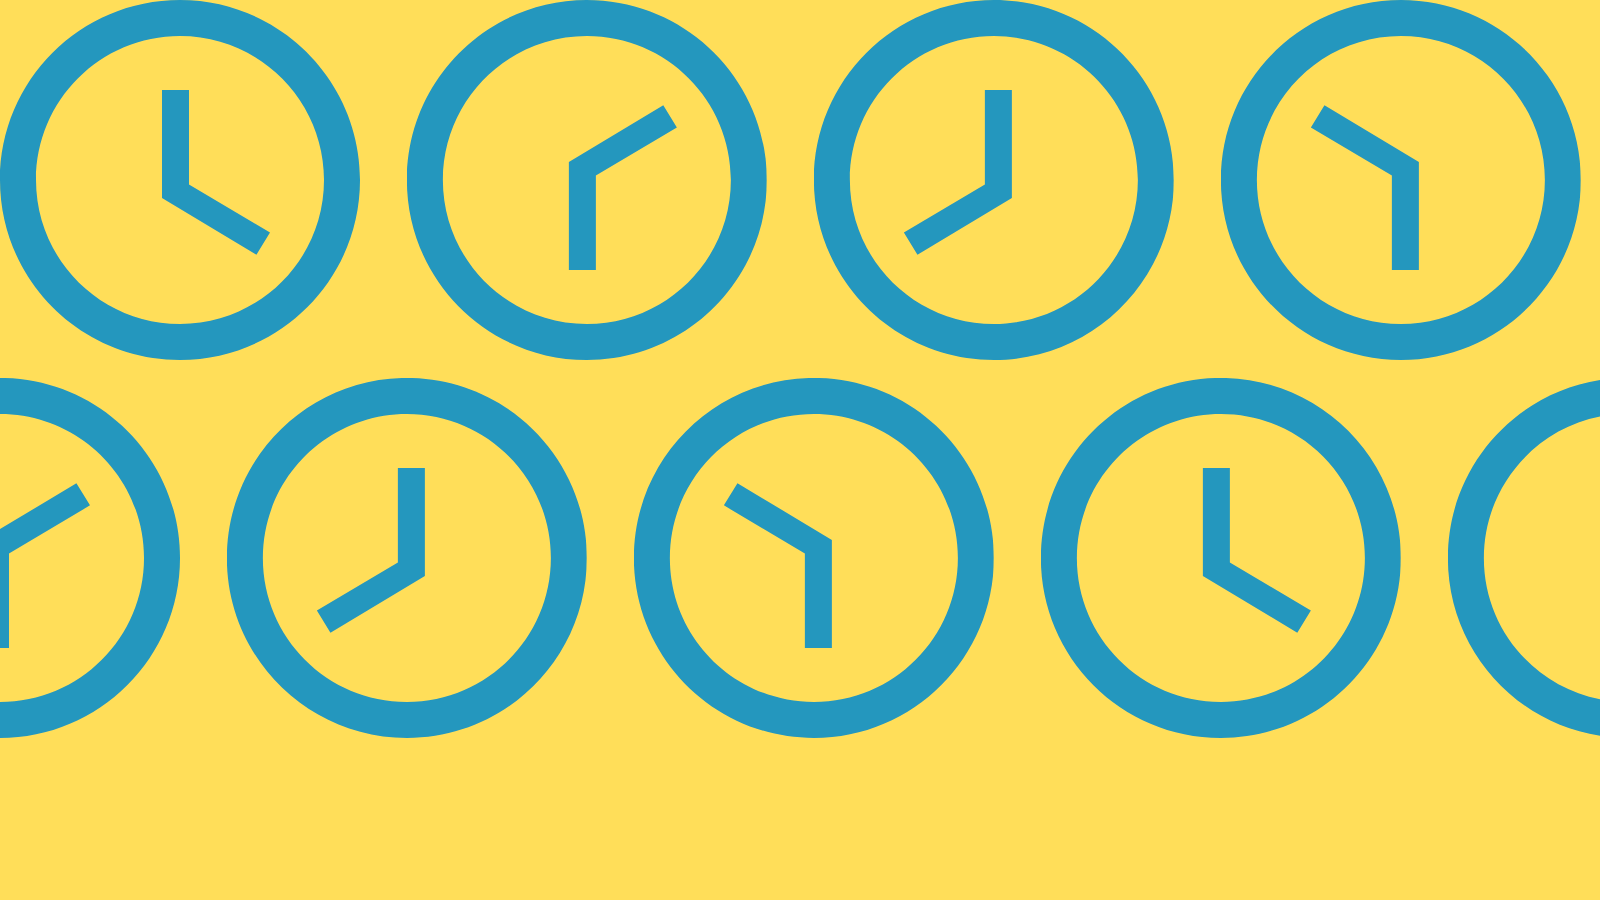 Minimalist icons of clocks